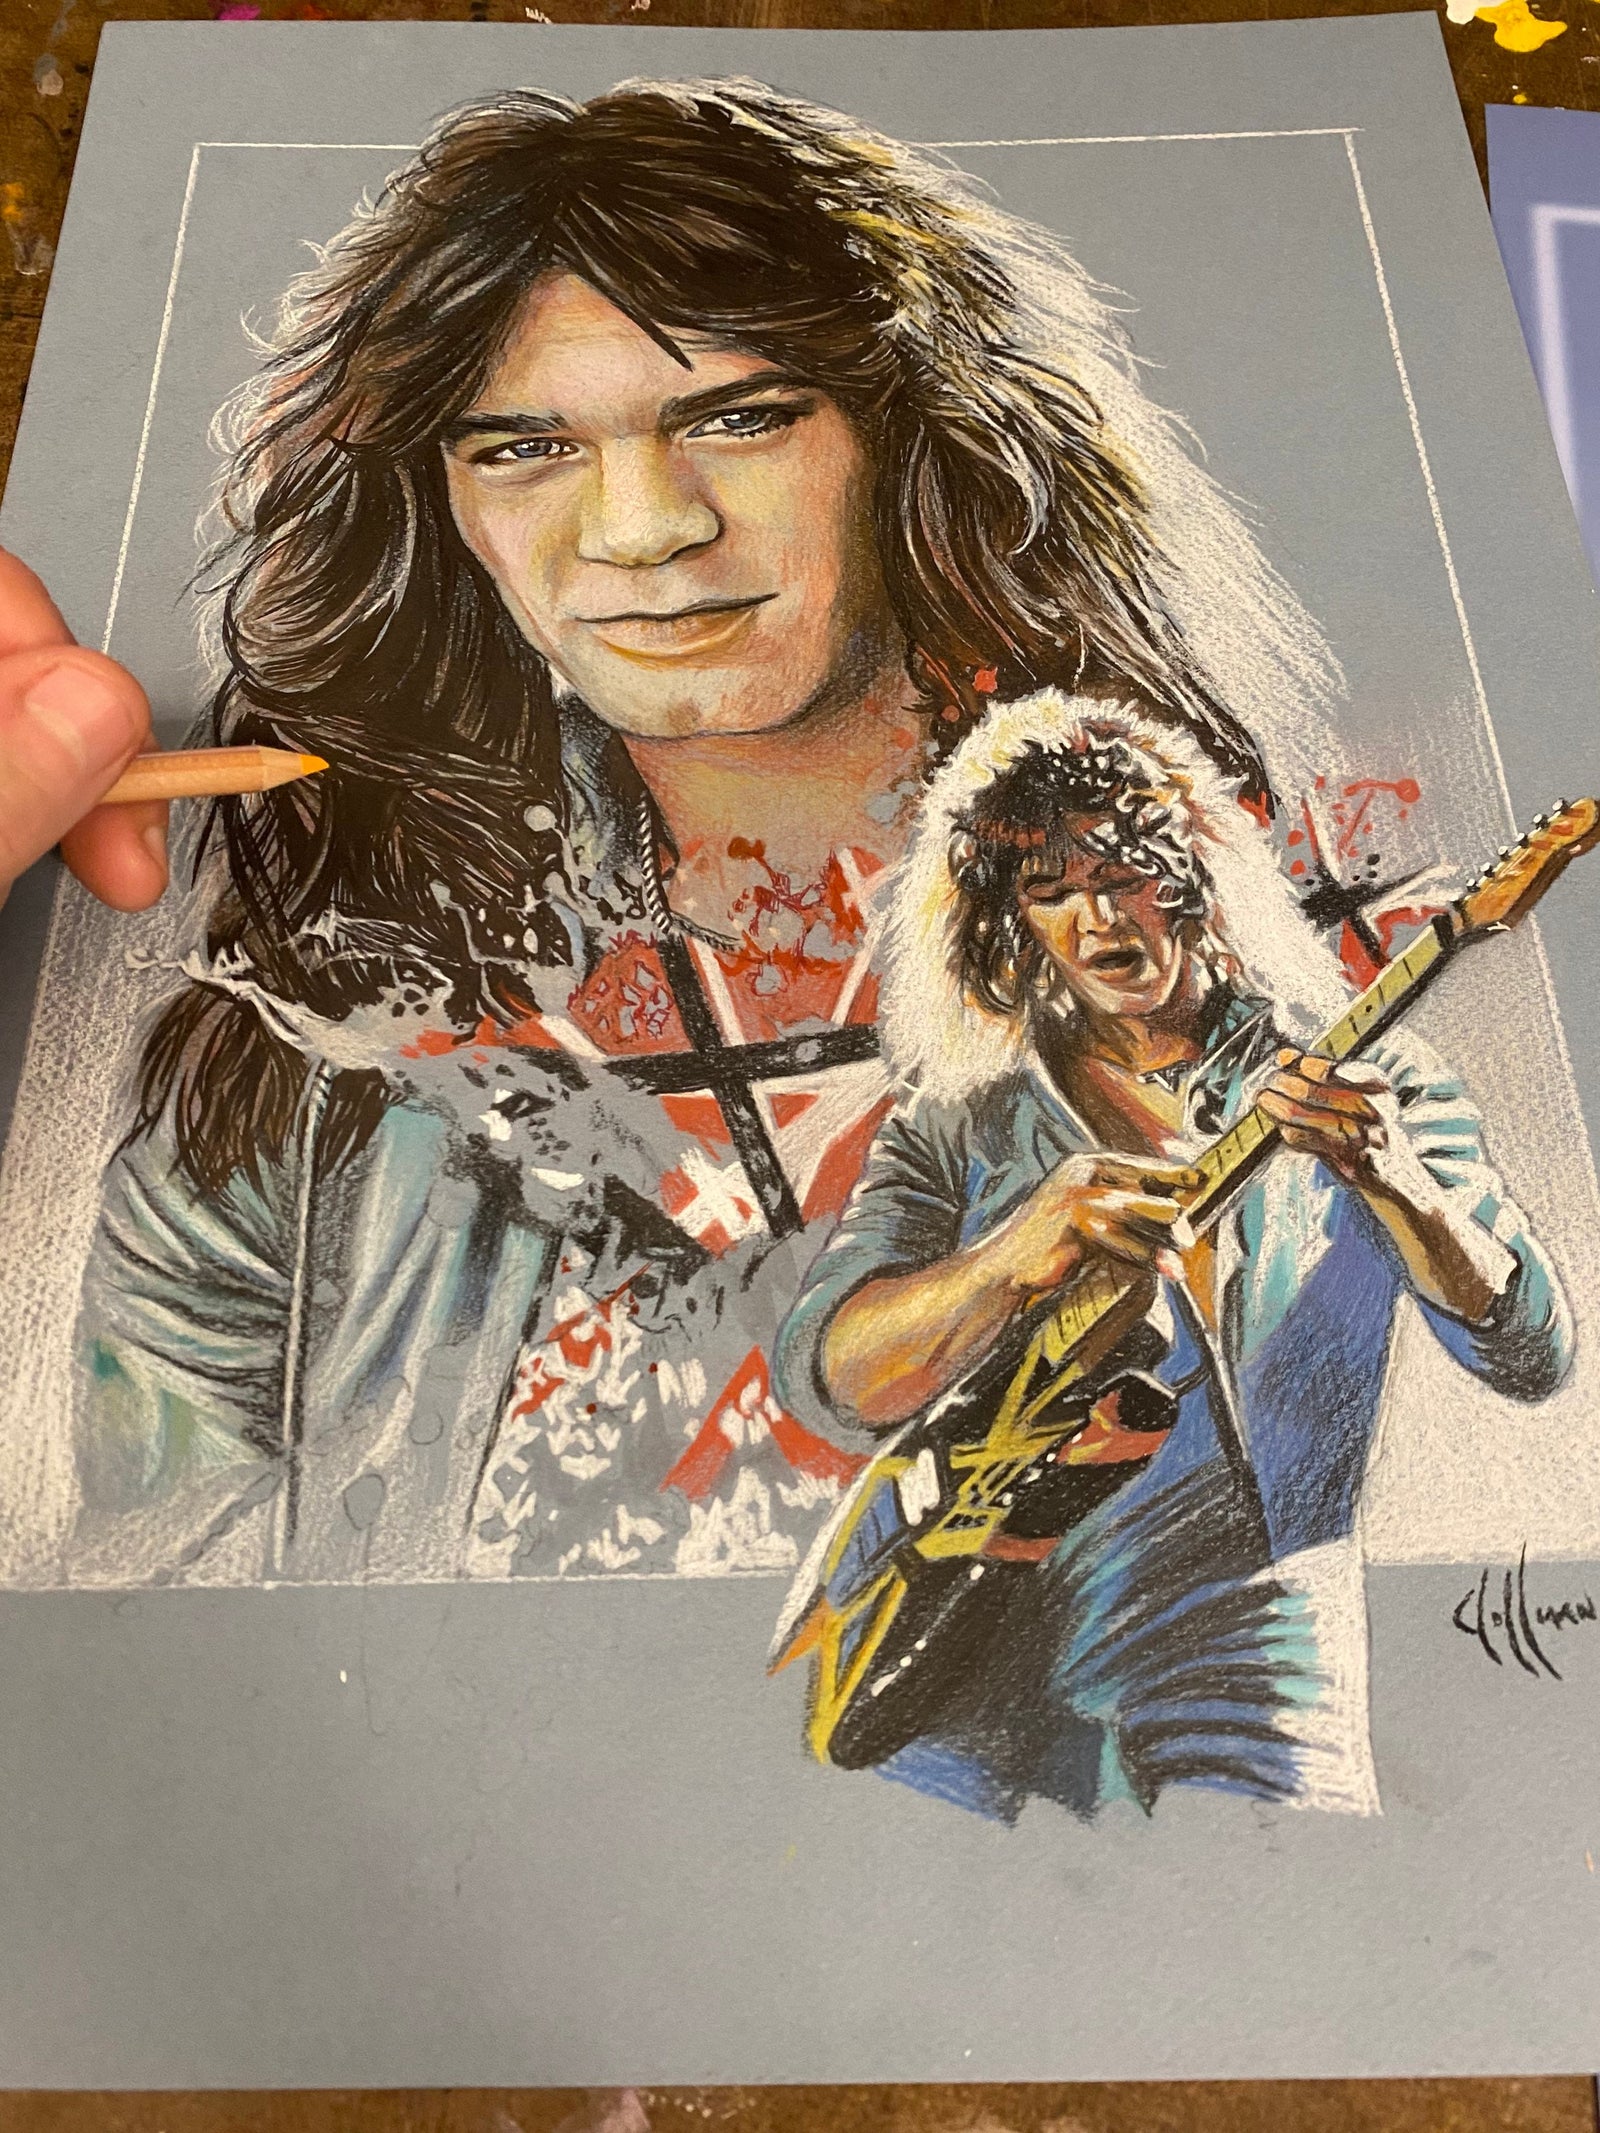 One of Greatest Guitarist Eddie Van Halen Music Artist Drawings